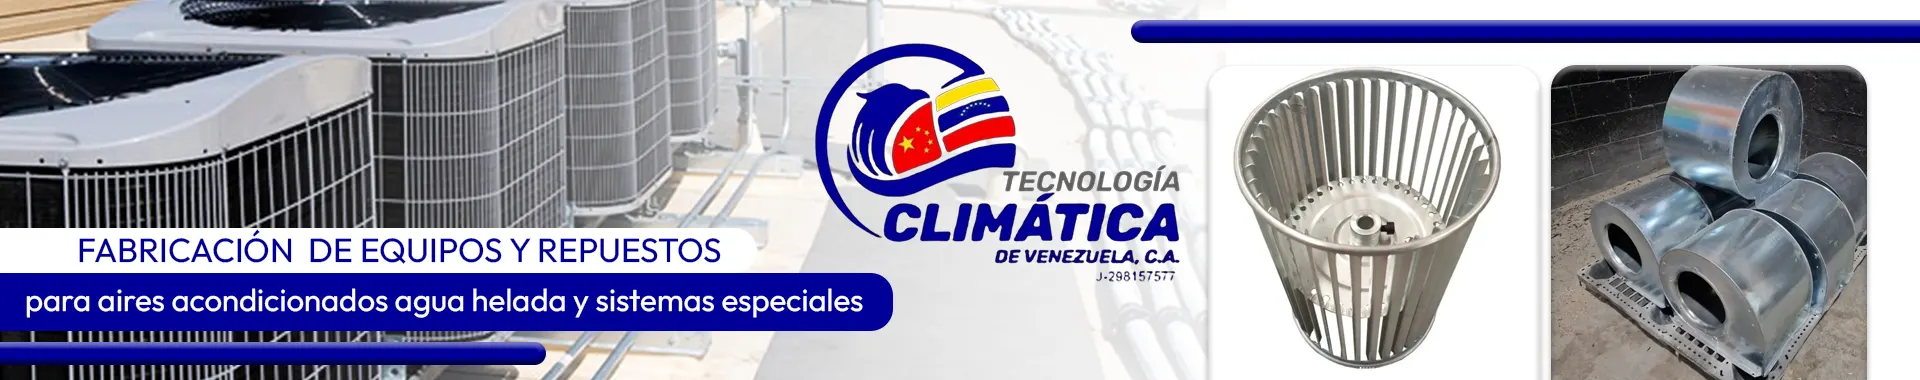 Imagen 1 del perfil de Tecnología Climática de Venezuela